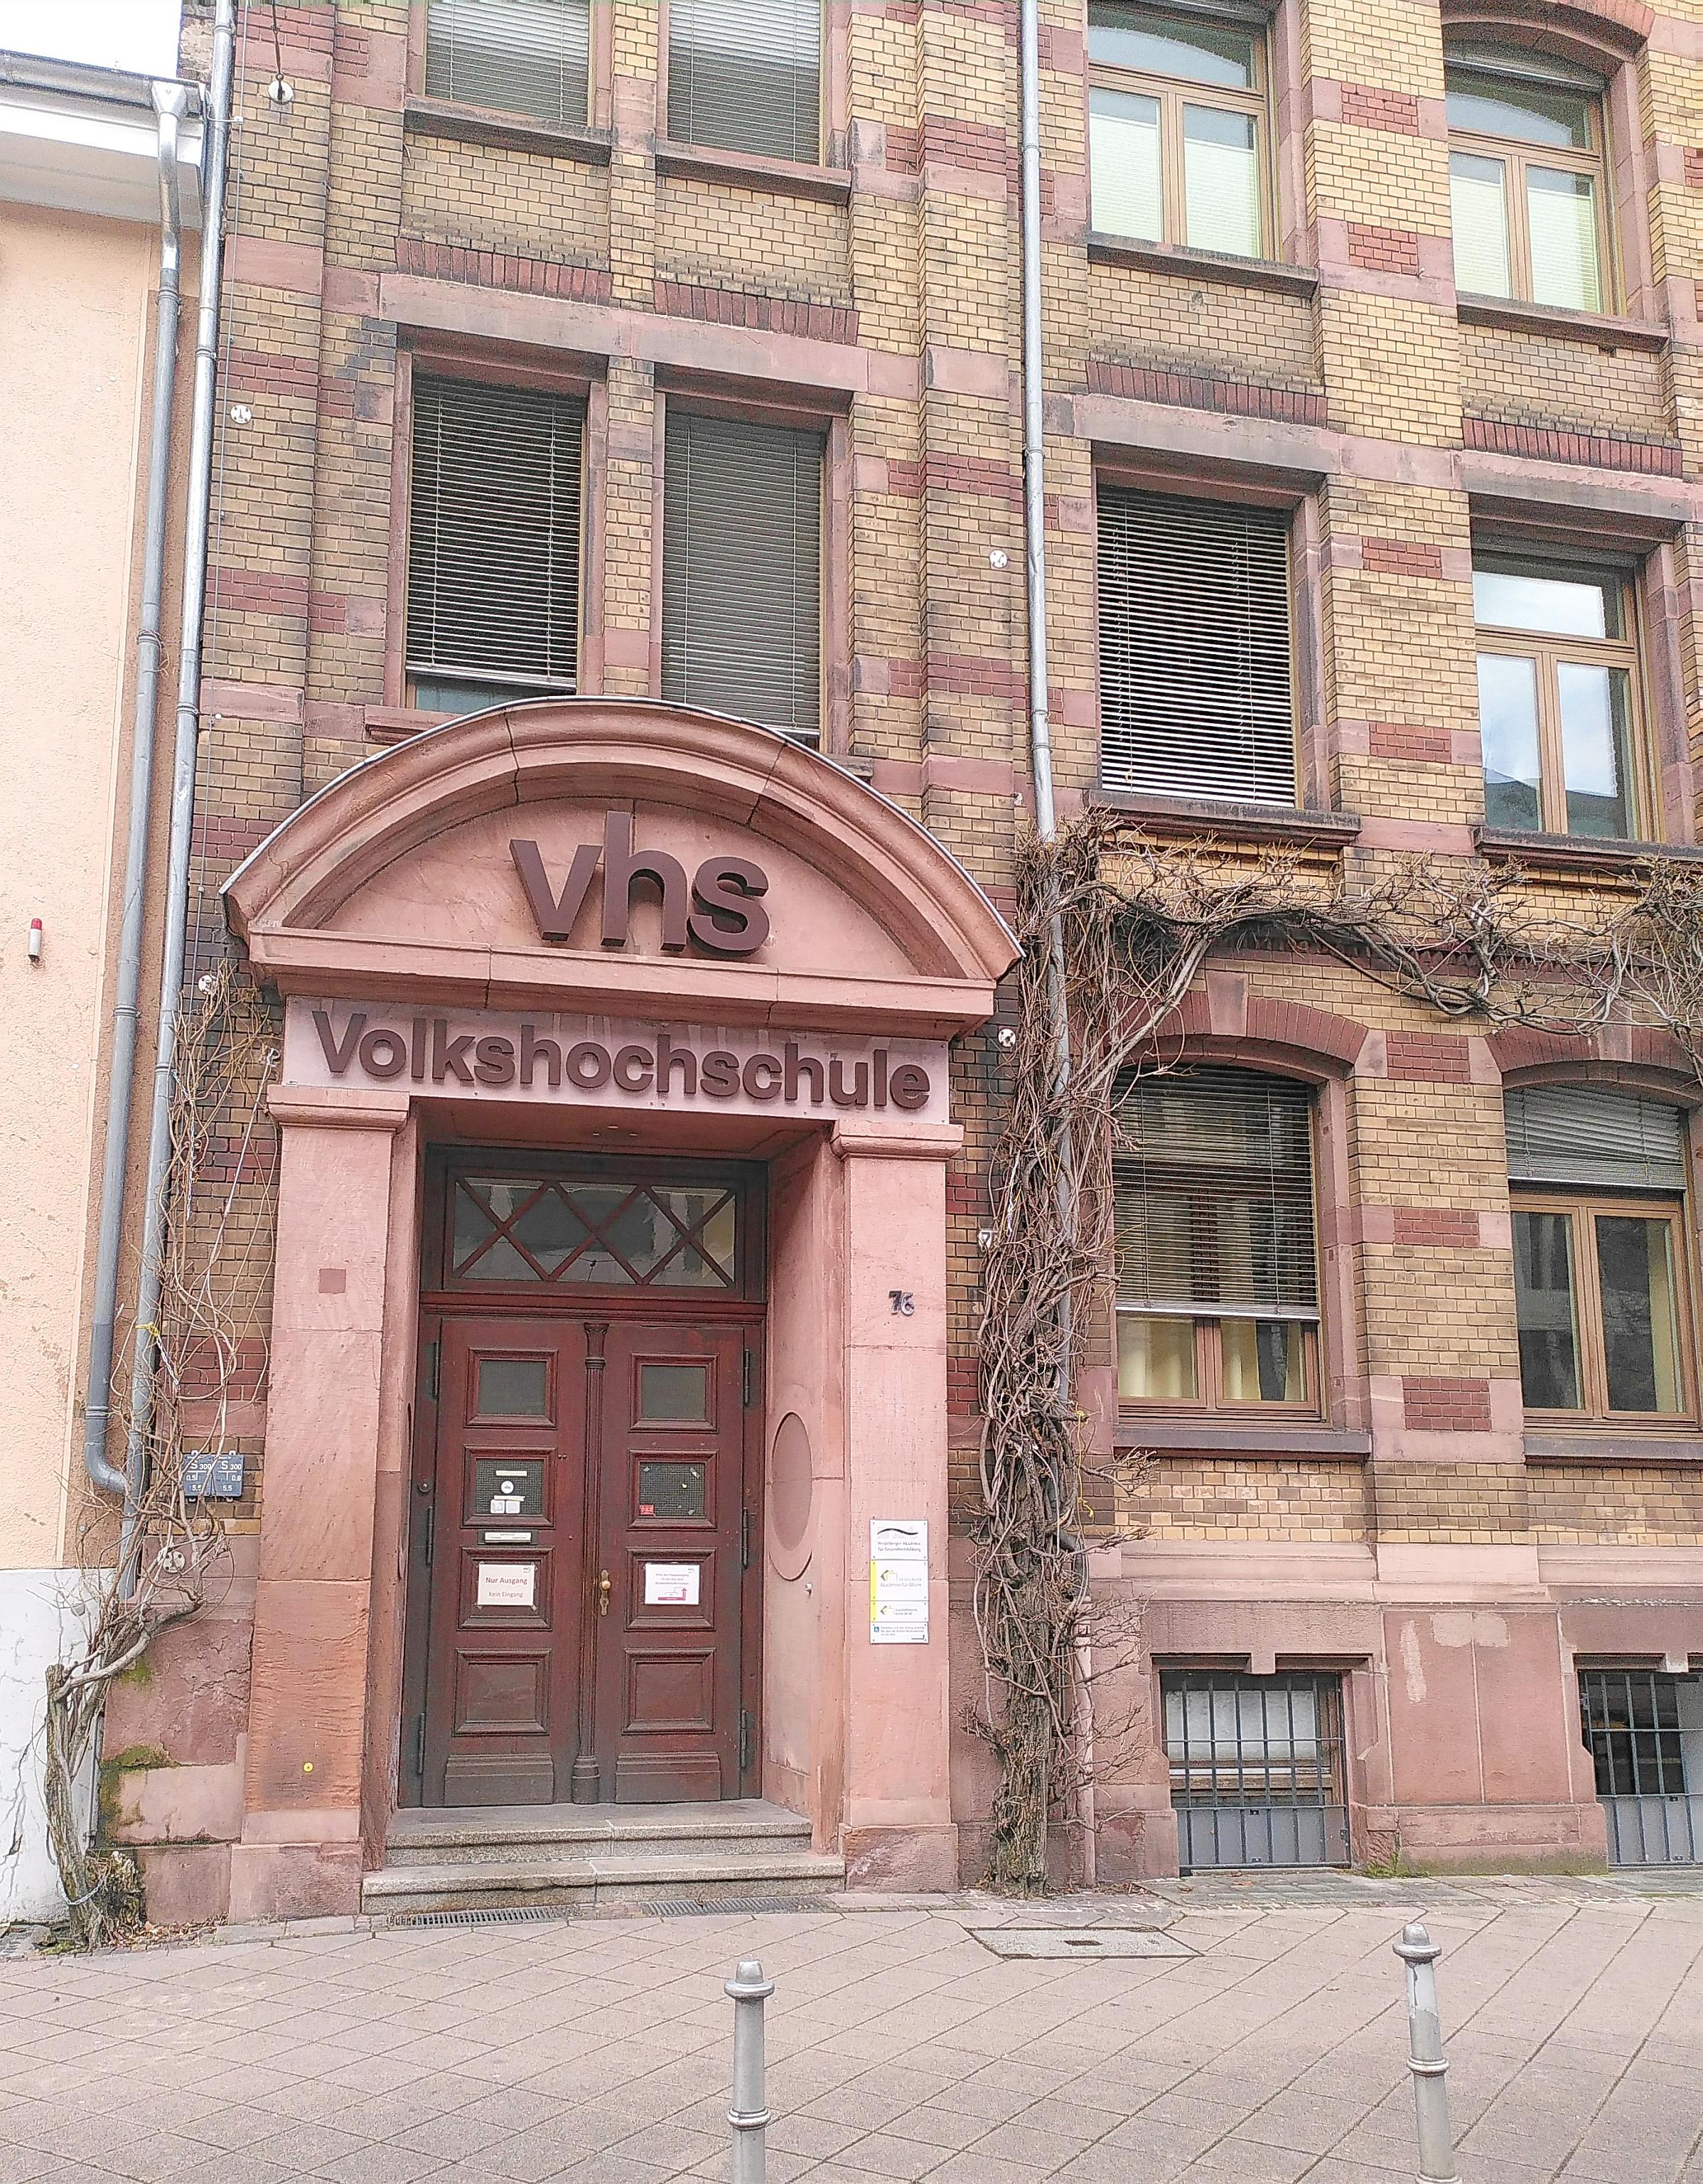 Eingangstüre in einem Backsteingebäude, Rundbogen. Darin steht VHS Volkshochschule.